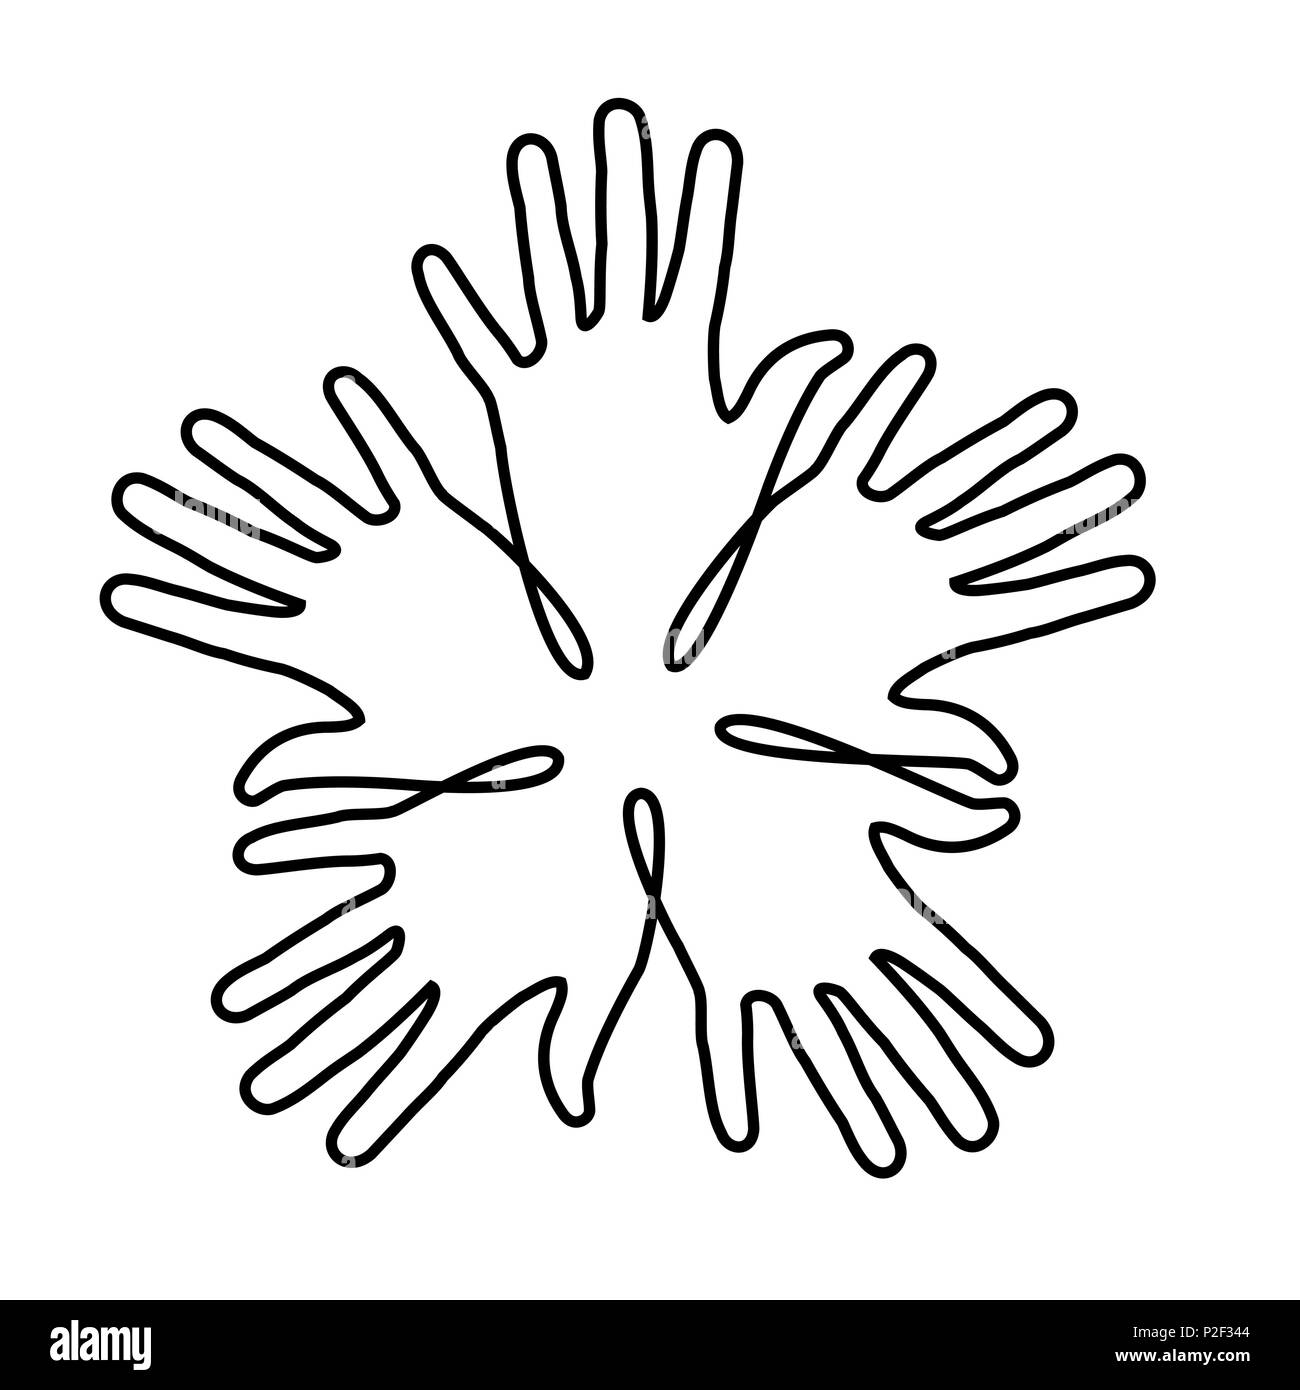 Menschliche Hände in durchgehenden Linie gezeichnet. Konzept Idee für Gemeinschaft helfen, charity Projekt oder gesellschaftliches Ereignis. EPS 10 Vektor. Stock Vektor